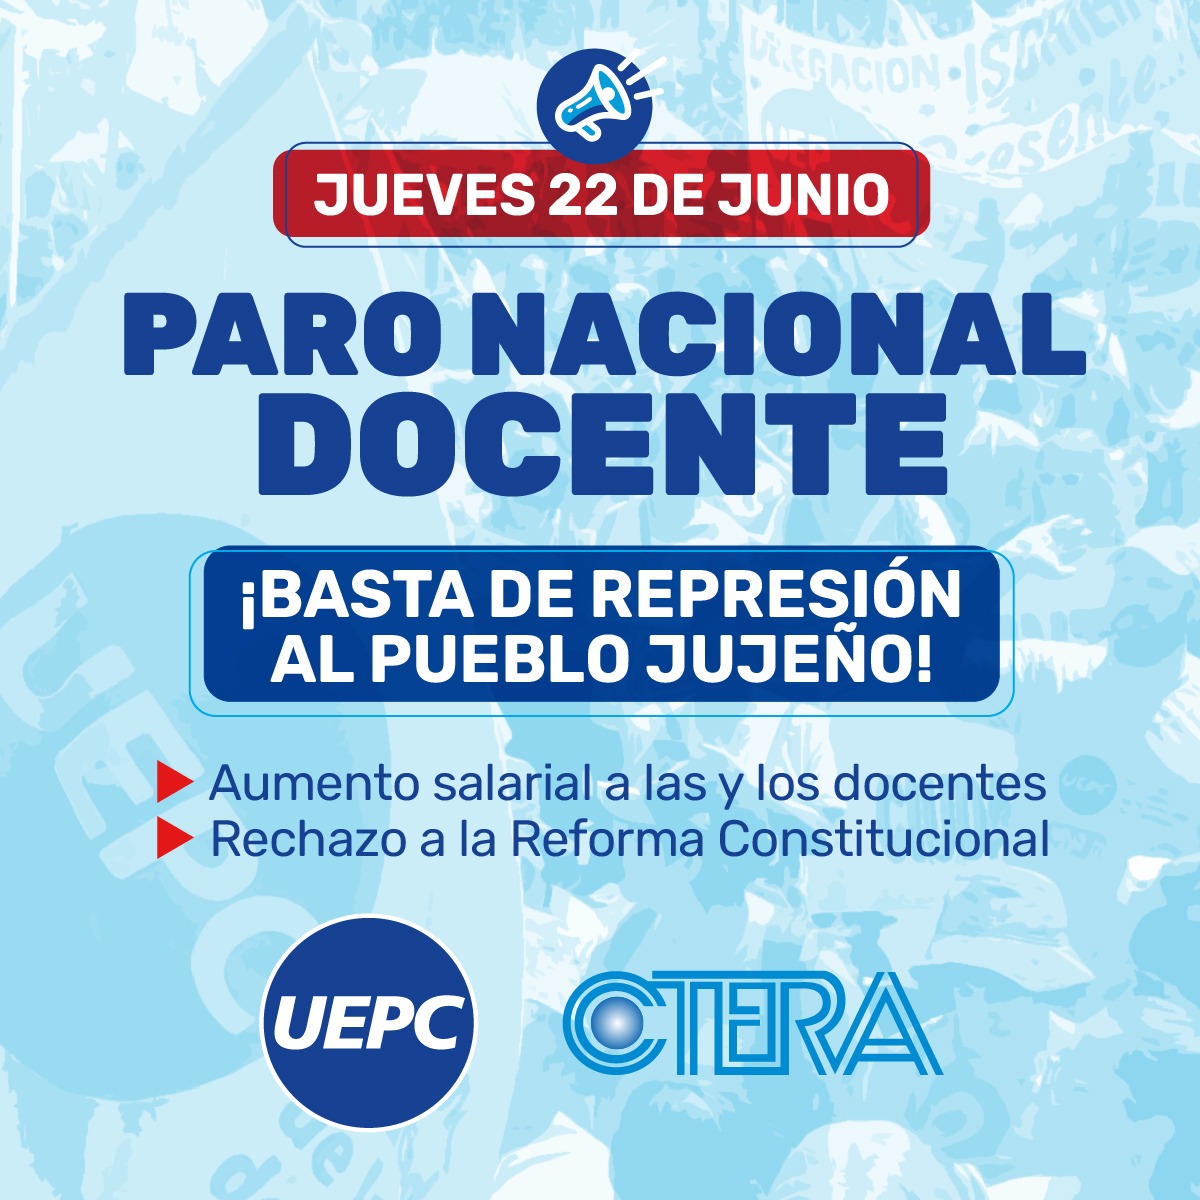 #DocentesEnLucha
#JujuyResiste
#ParoNacionalDocente
#Ctera
#Uepc